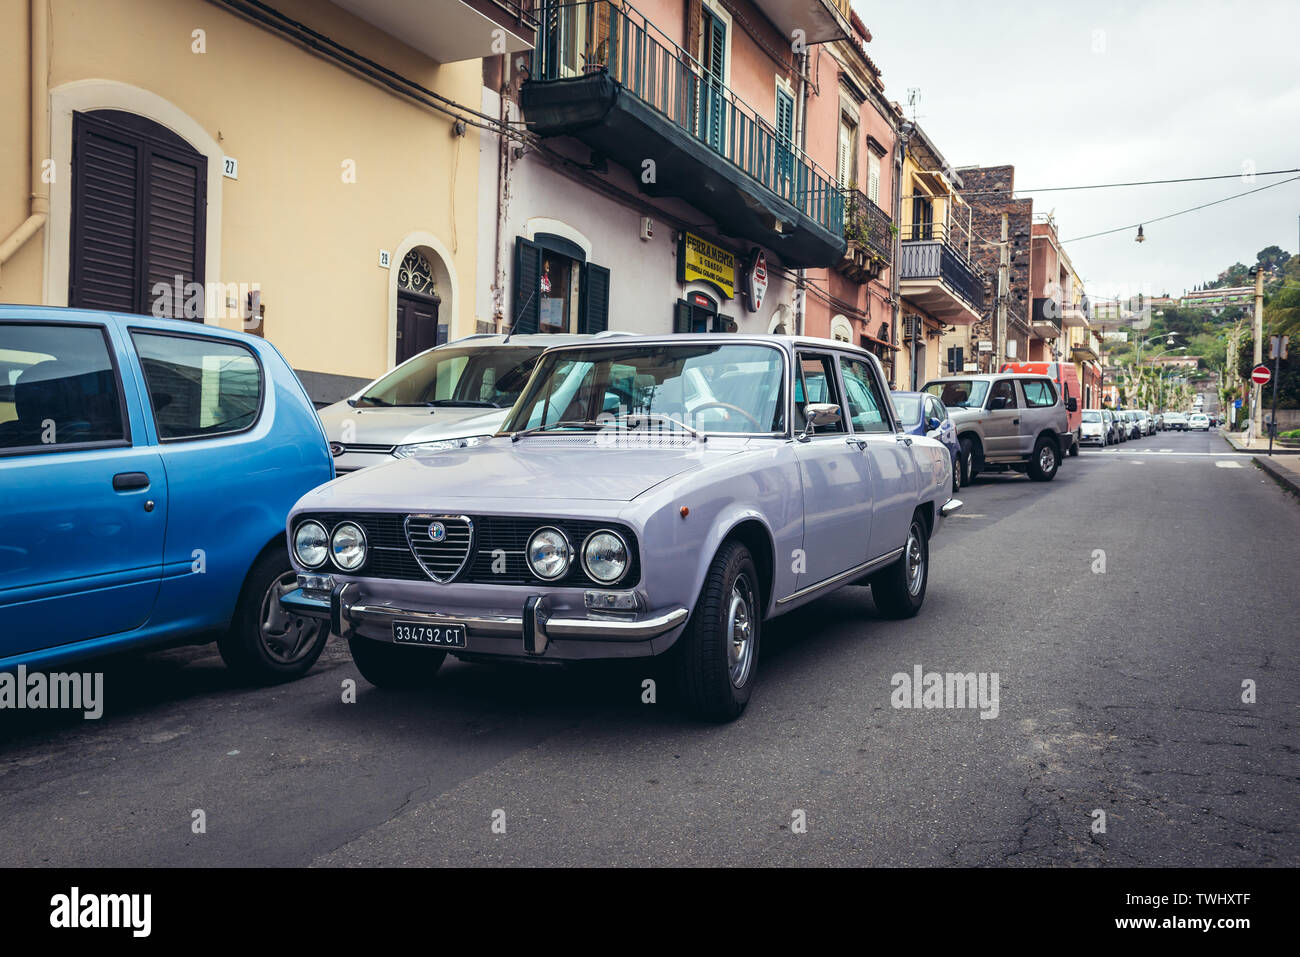 Alfa Romeo 1750 Berlina auto in Aci Castello comune nella città metropolitana di Catania sulla isola di Sicilia in Italia Foto Stock